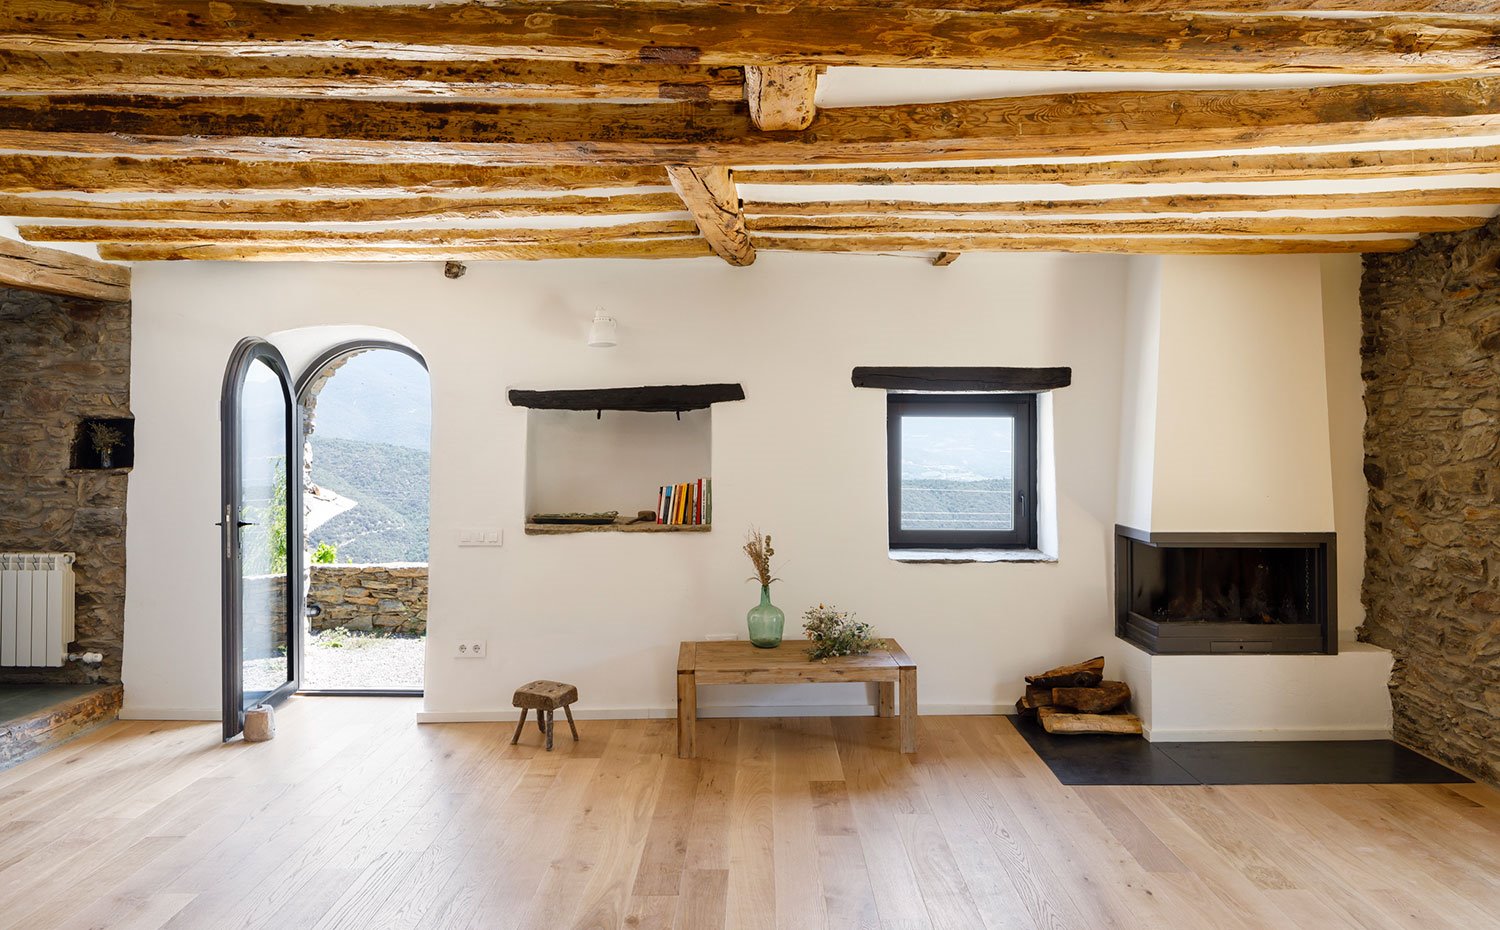 Frontal de la sala de estar con apertura abovedada hacia exterior, techos con vigas de madera